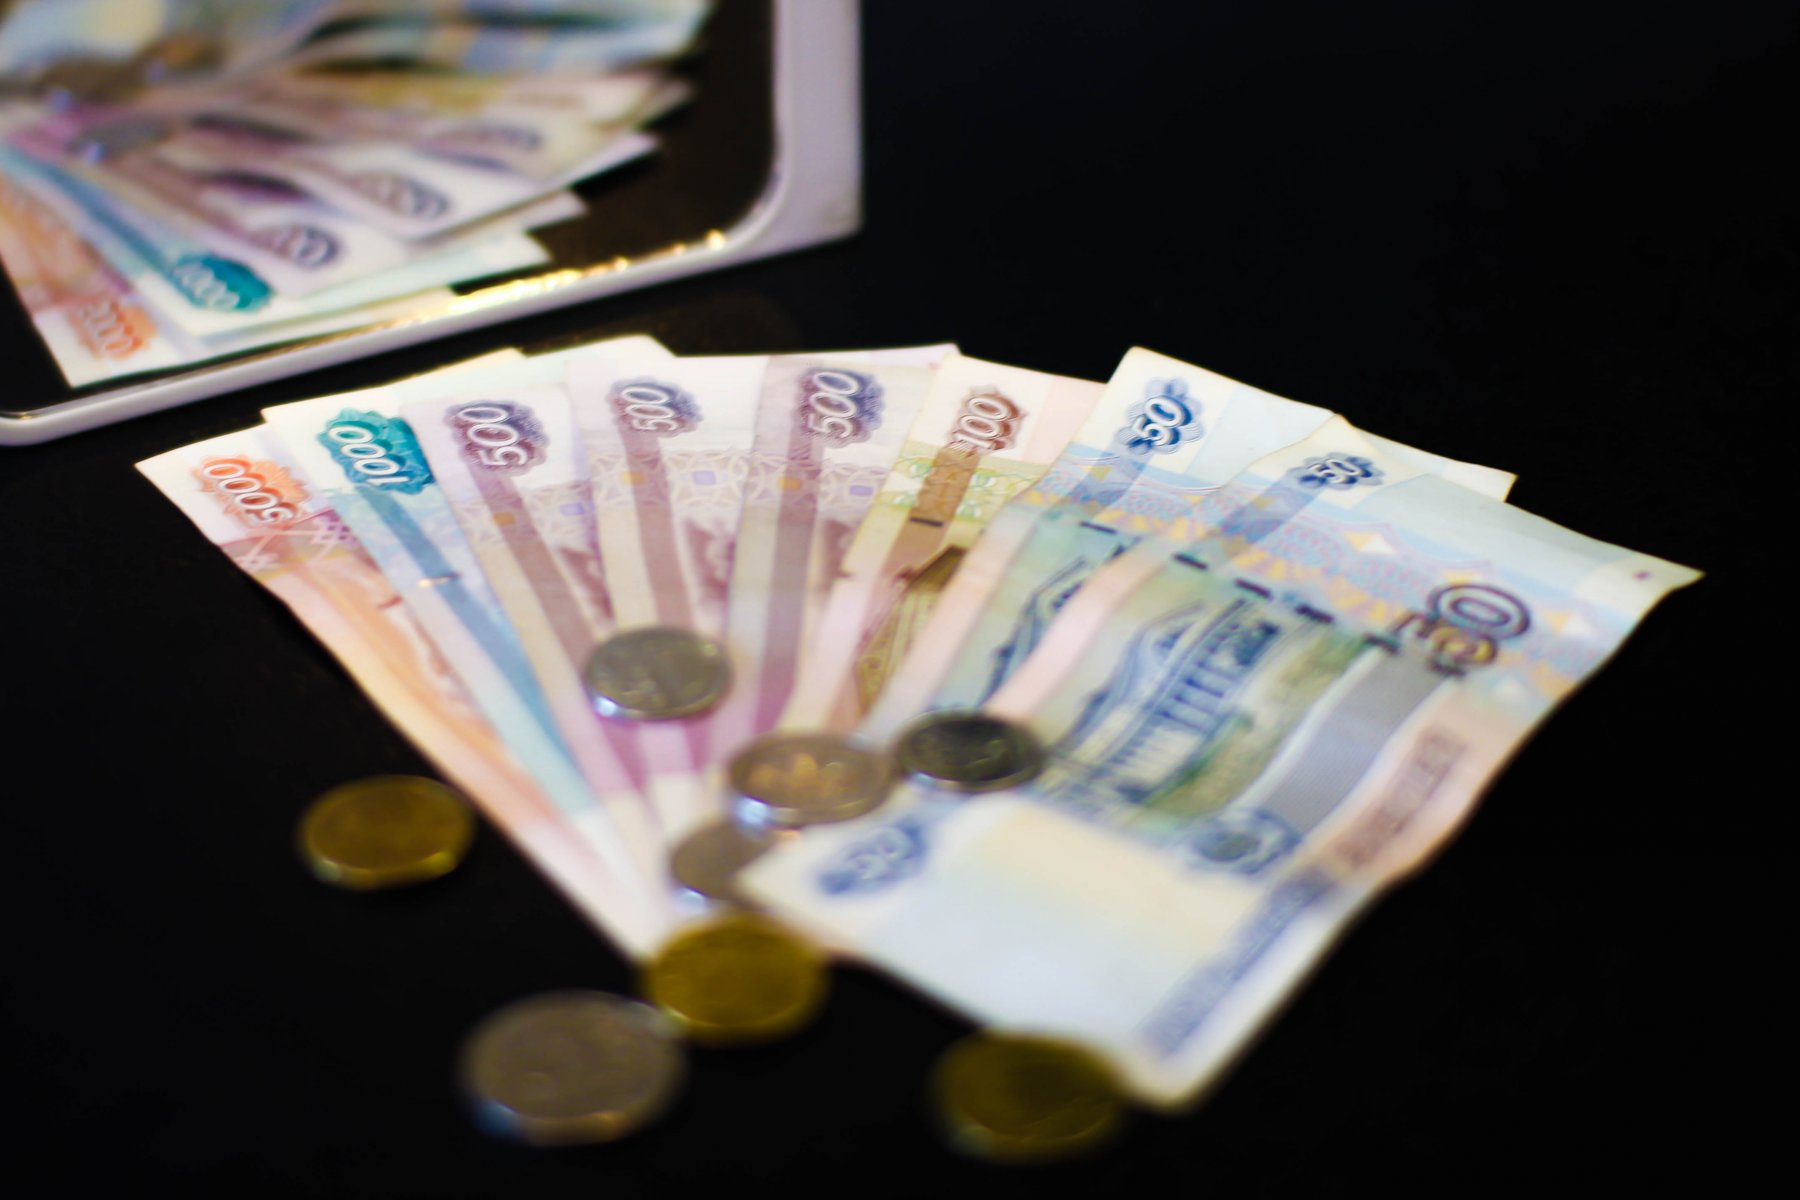 Кладовщик сети электроники в Серпухове украл айфоны на 2 млн рублей, чтобы отдать долг в 300 тысяч